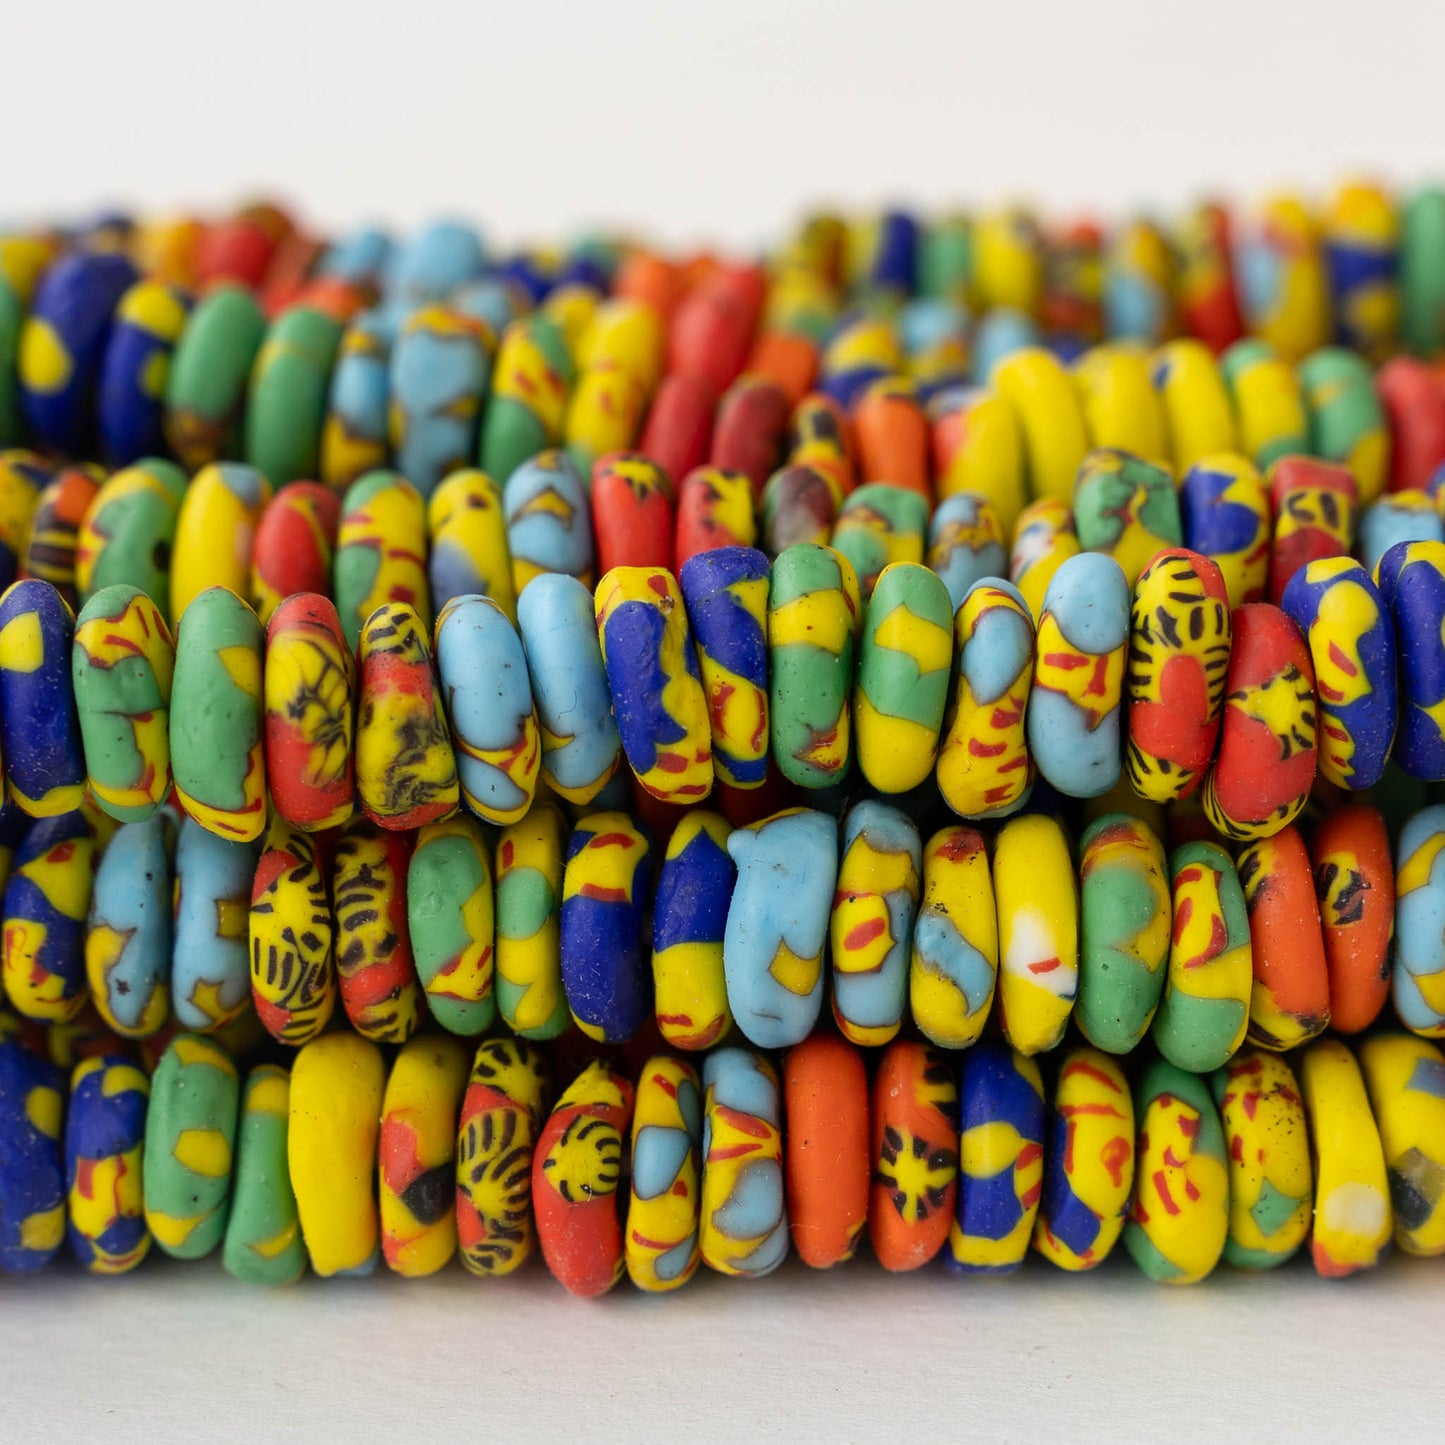 10mm Krobo Donut Beads From Ghana Africa  - Multi colored